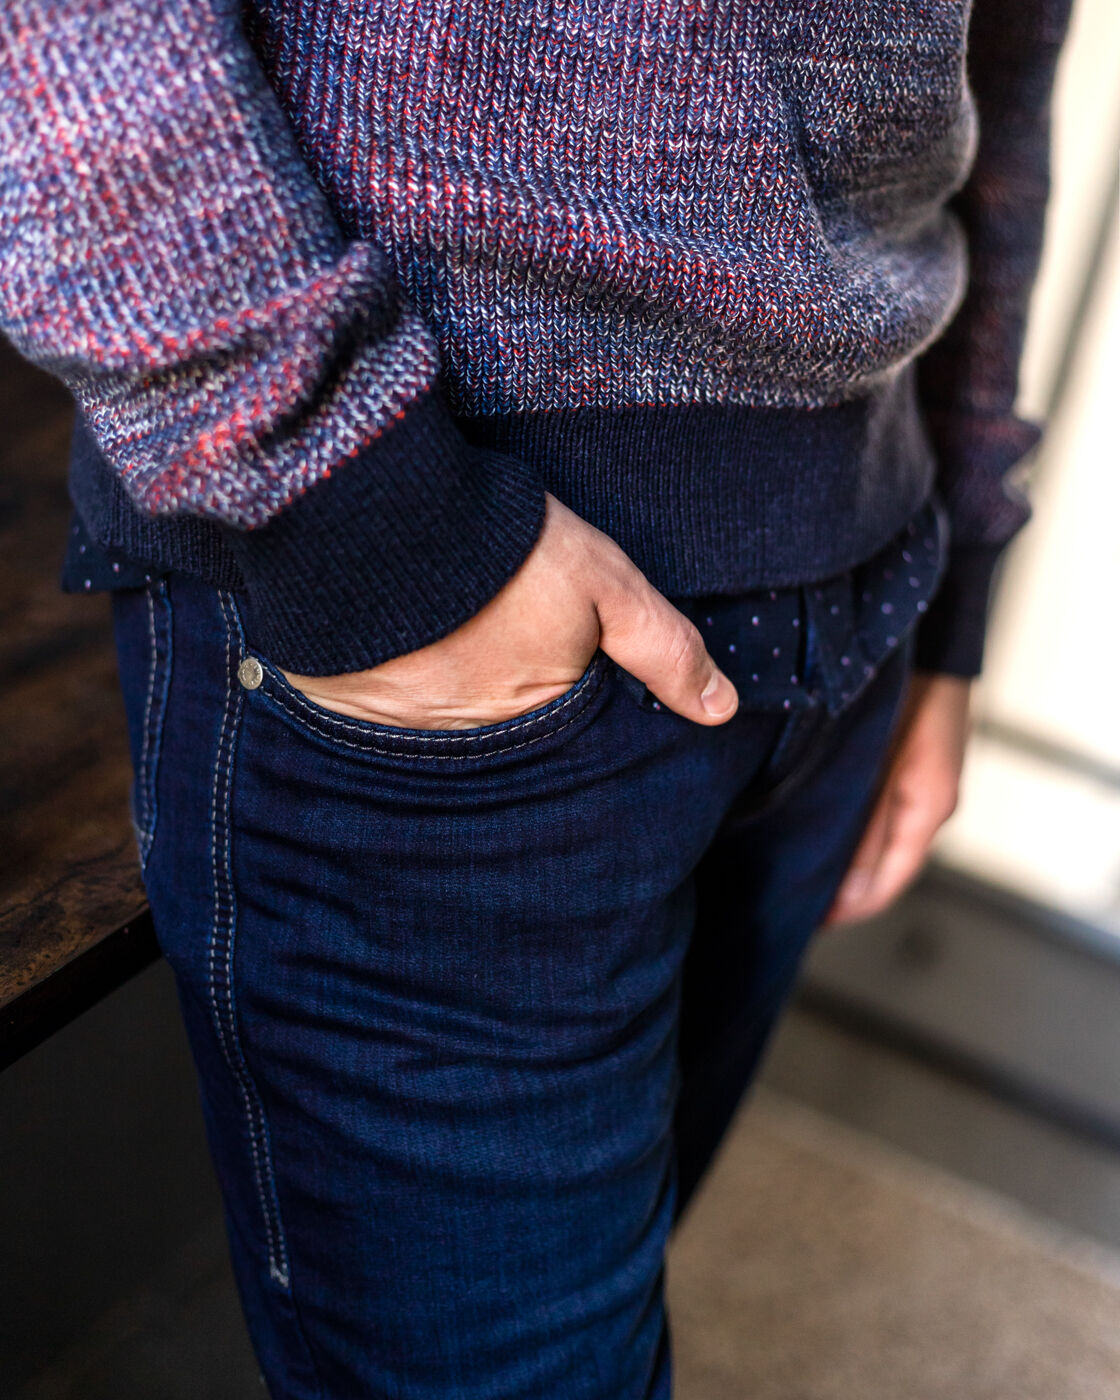 Detailbild einer dunkelblauen MAC Jeans